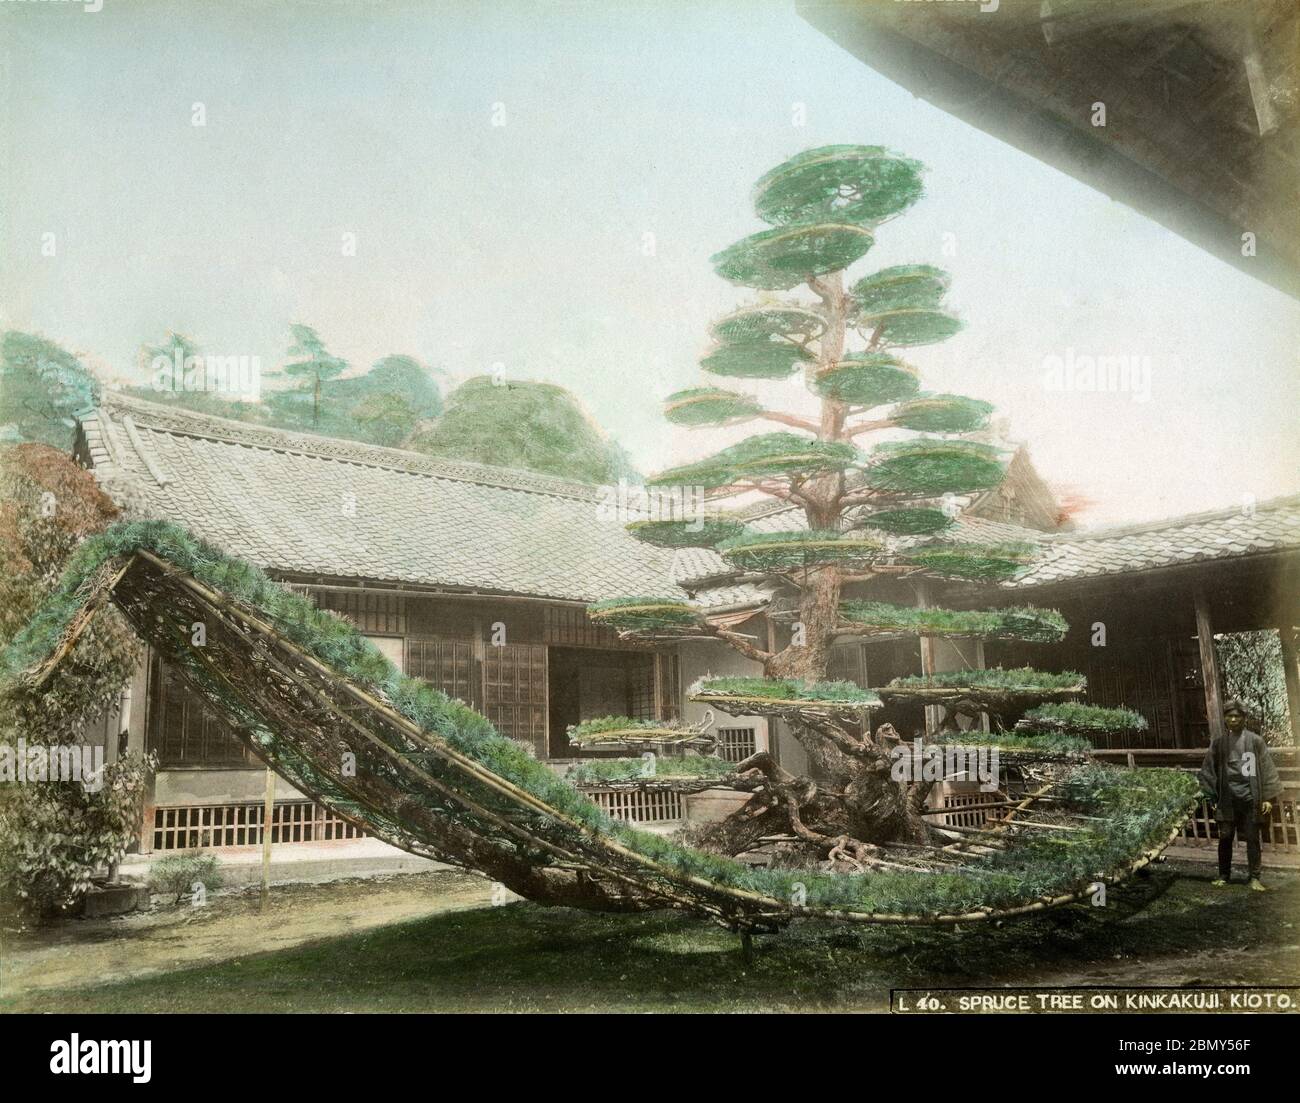 [ 1890 Japon - PIN japonais qui ressemble à un bateau ] — Rikushu (bateau sur terre) pin (陸舟ノ松) dans le jardin du Shoin salle à dessin (書院の庭園) au temple bouddhiste Zen Kinkaku-ji (金閣寺), également connu sous le nom de Temple du Pavillon d'or, à Kyoto. Kinkaku-ji a été construit en 1397 comme villa de retraite pour Shogun Ashikaga Yoshimitsu. Son fils, le shogun Ashikaga Yoshimochi, l'a converti en temple Zen de l'école Rinzai. photographie d'albumine vintage du xixe siècle. Banque D'Images